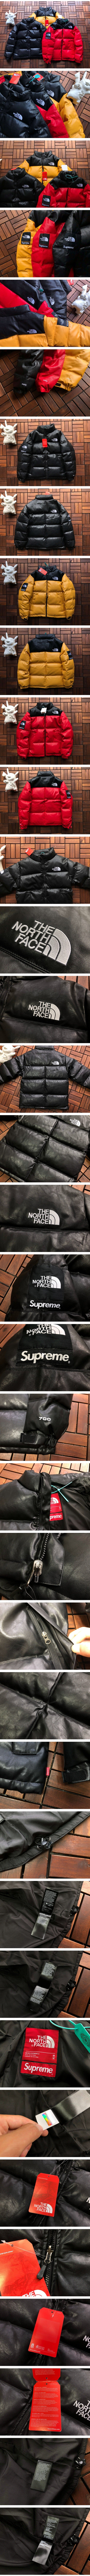 The North Face x Supreme 17FW Leather Nuptse Down Jacket ザノースフェイス x シュプリーム レザー ヌプシ ダウンジャケット